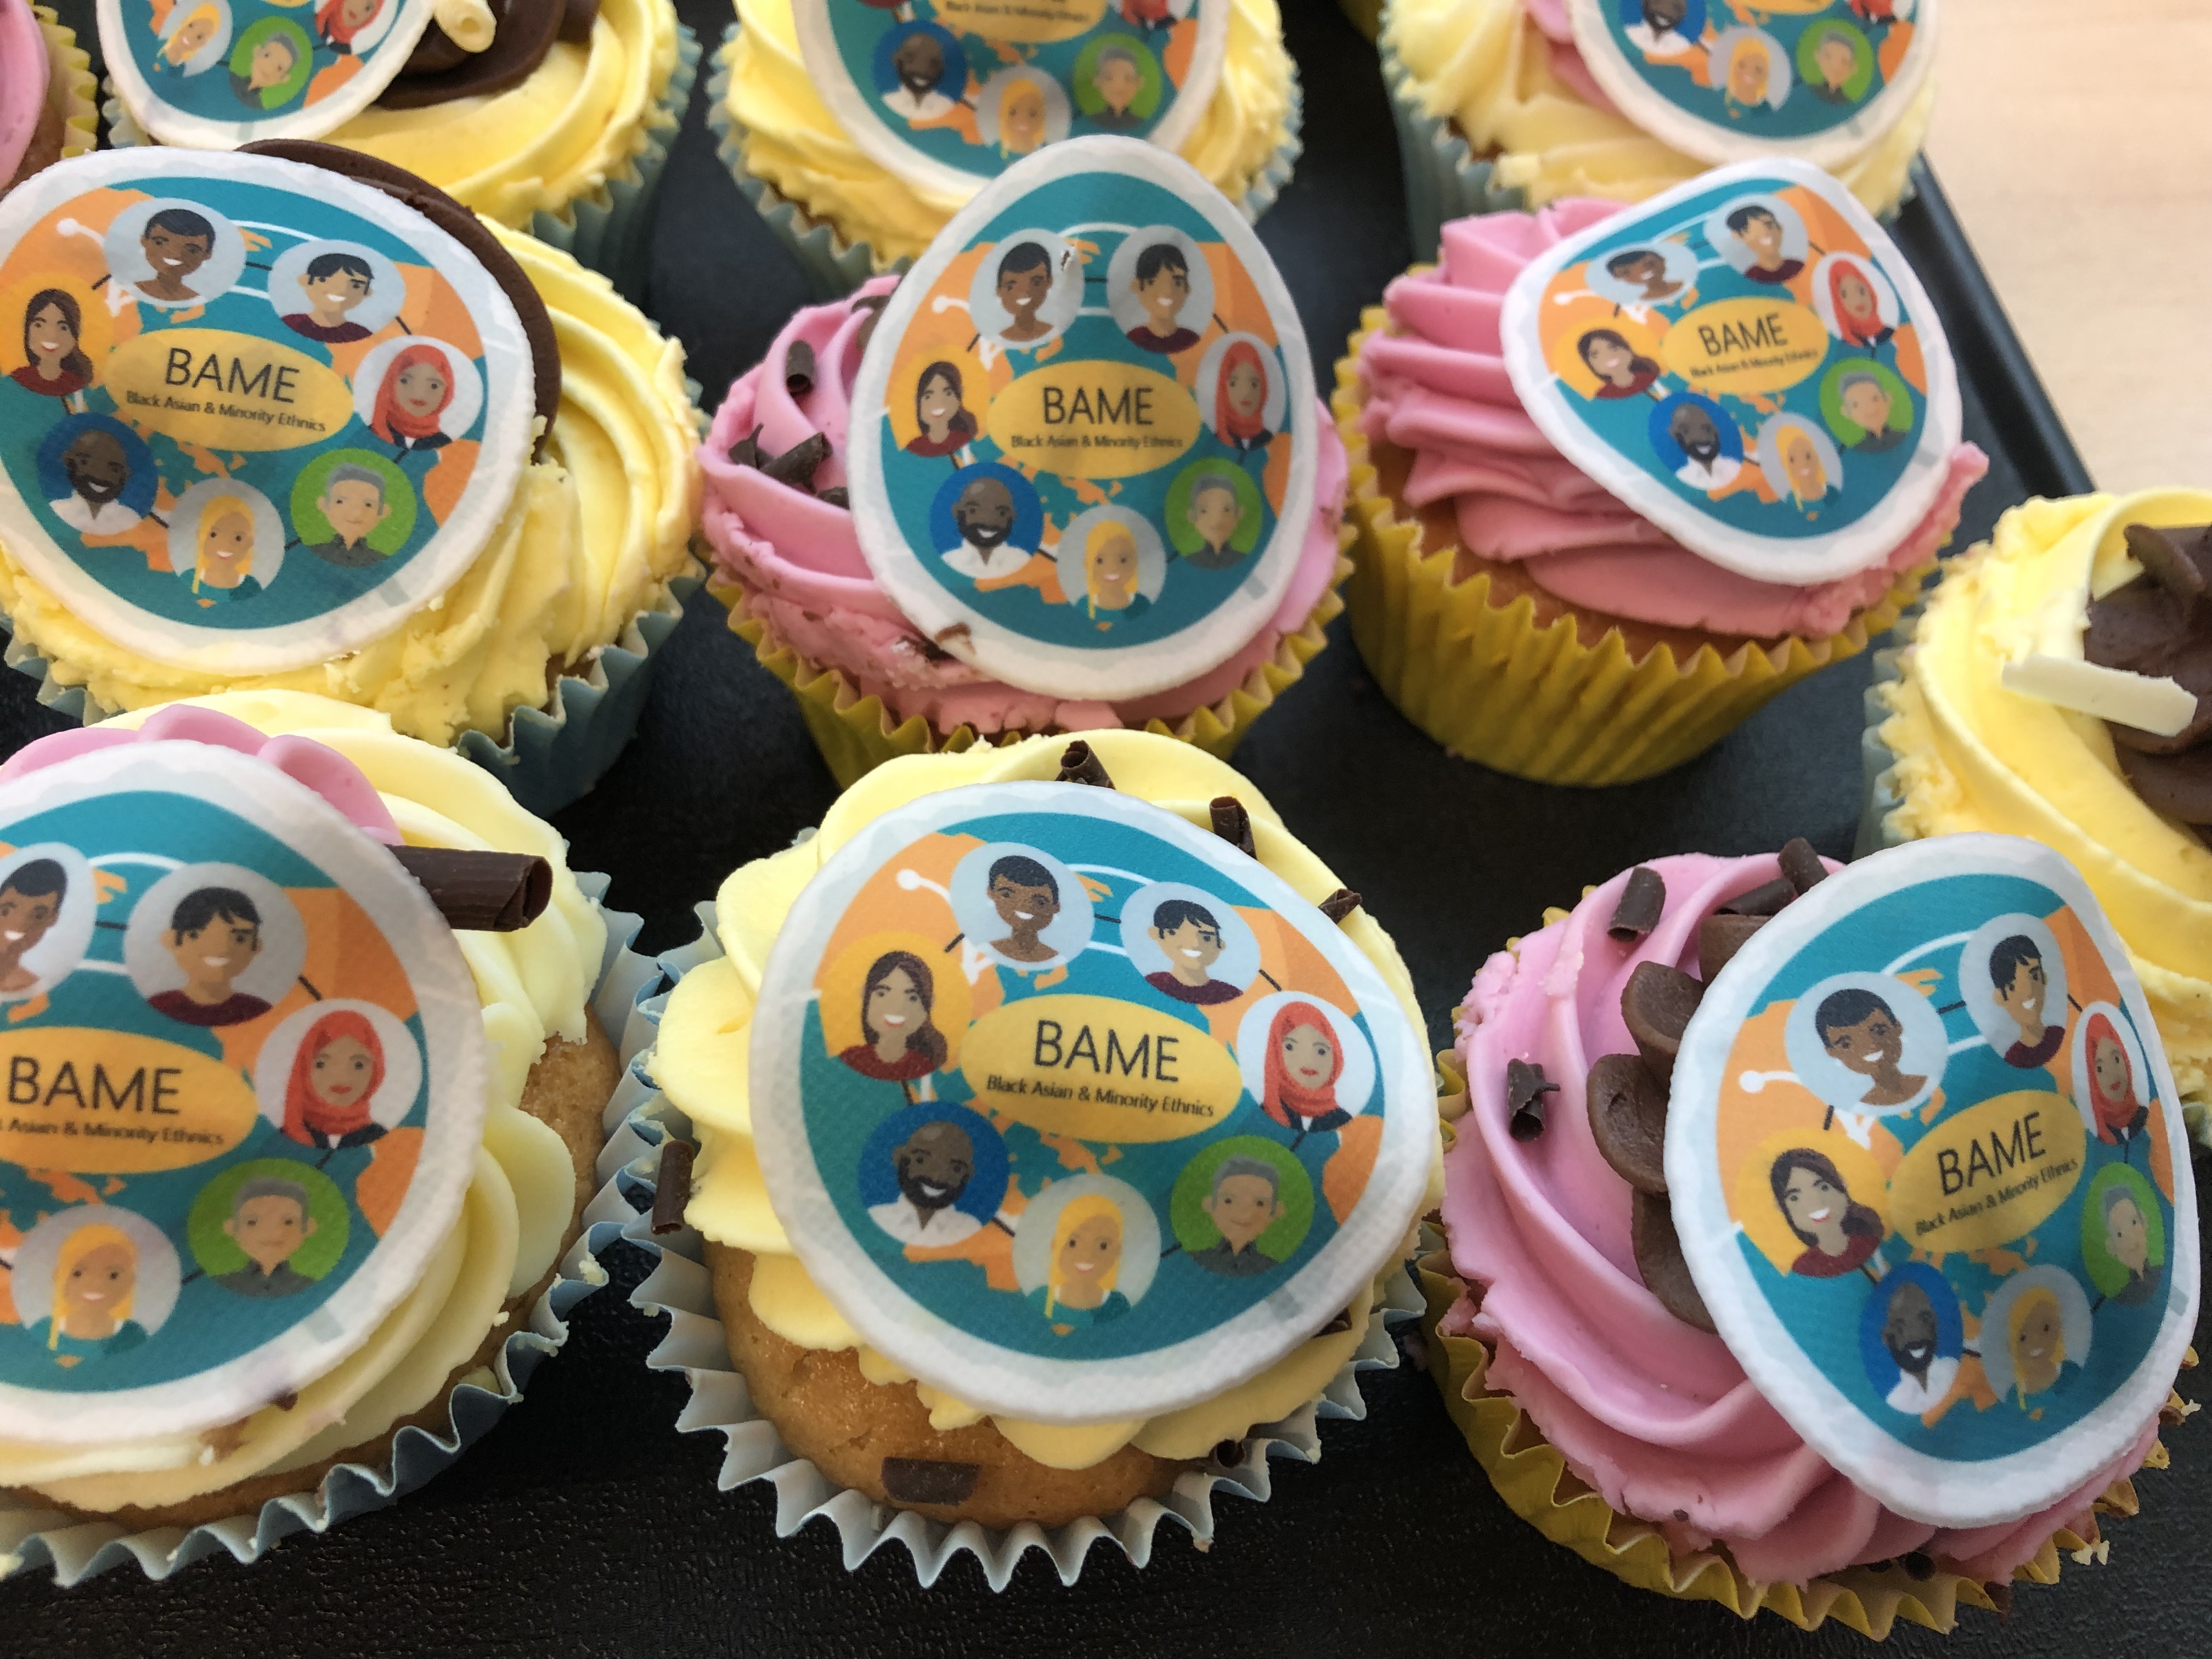 Cupcakes showing a Bame logo